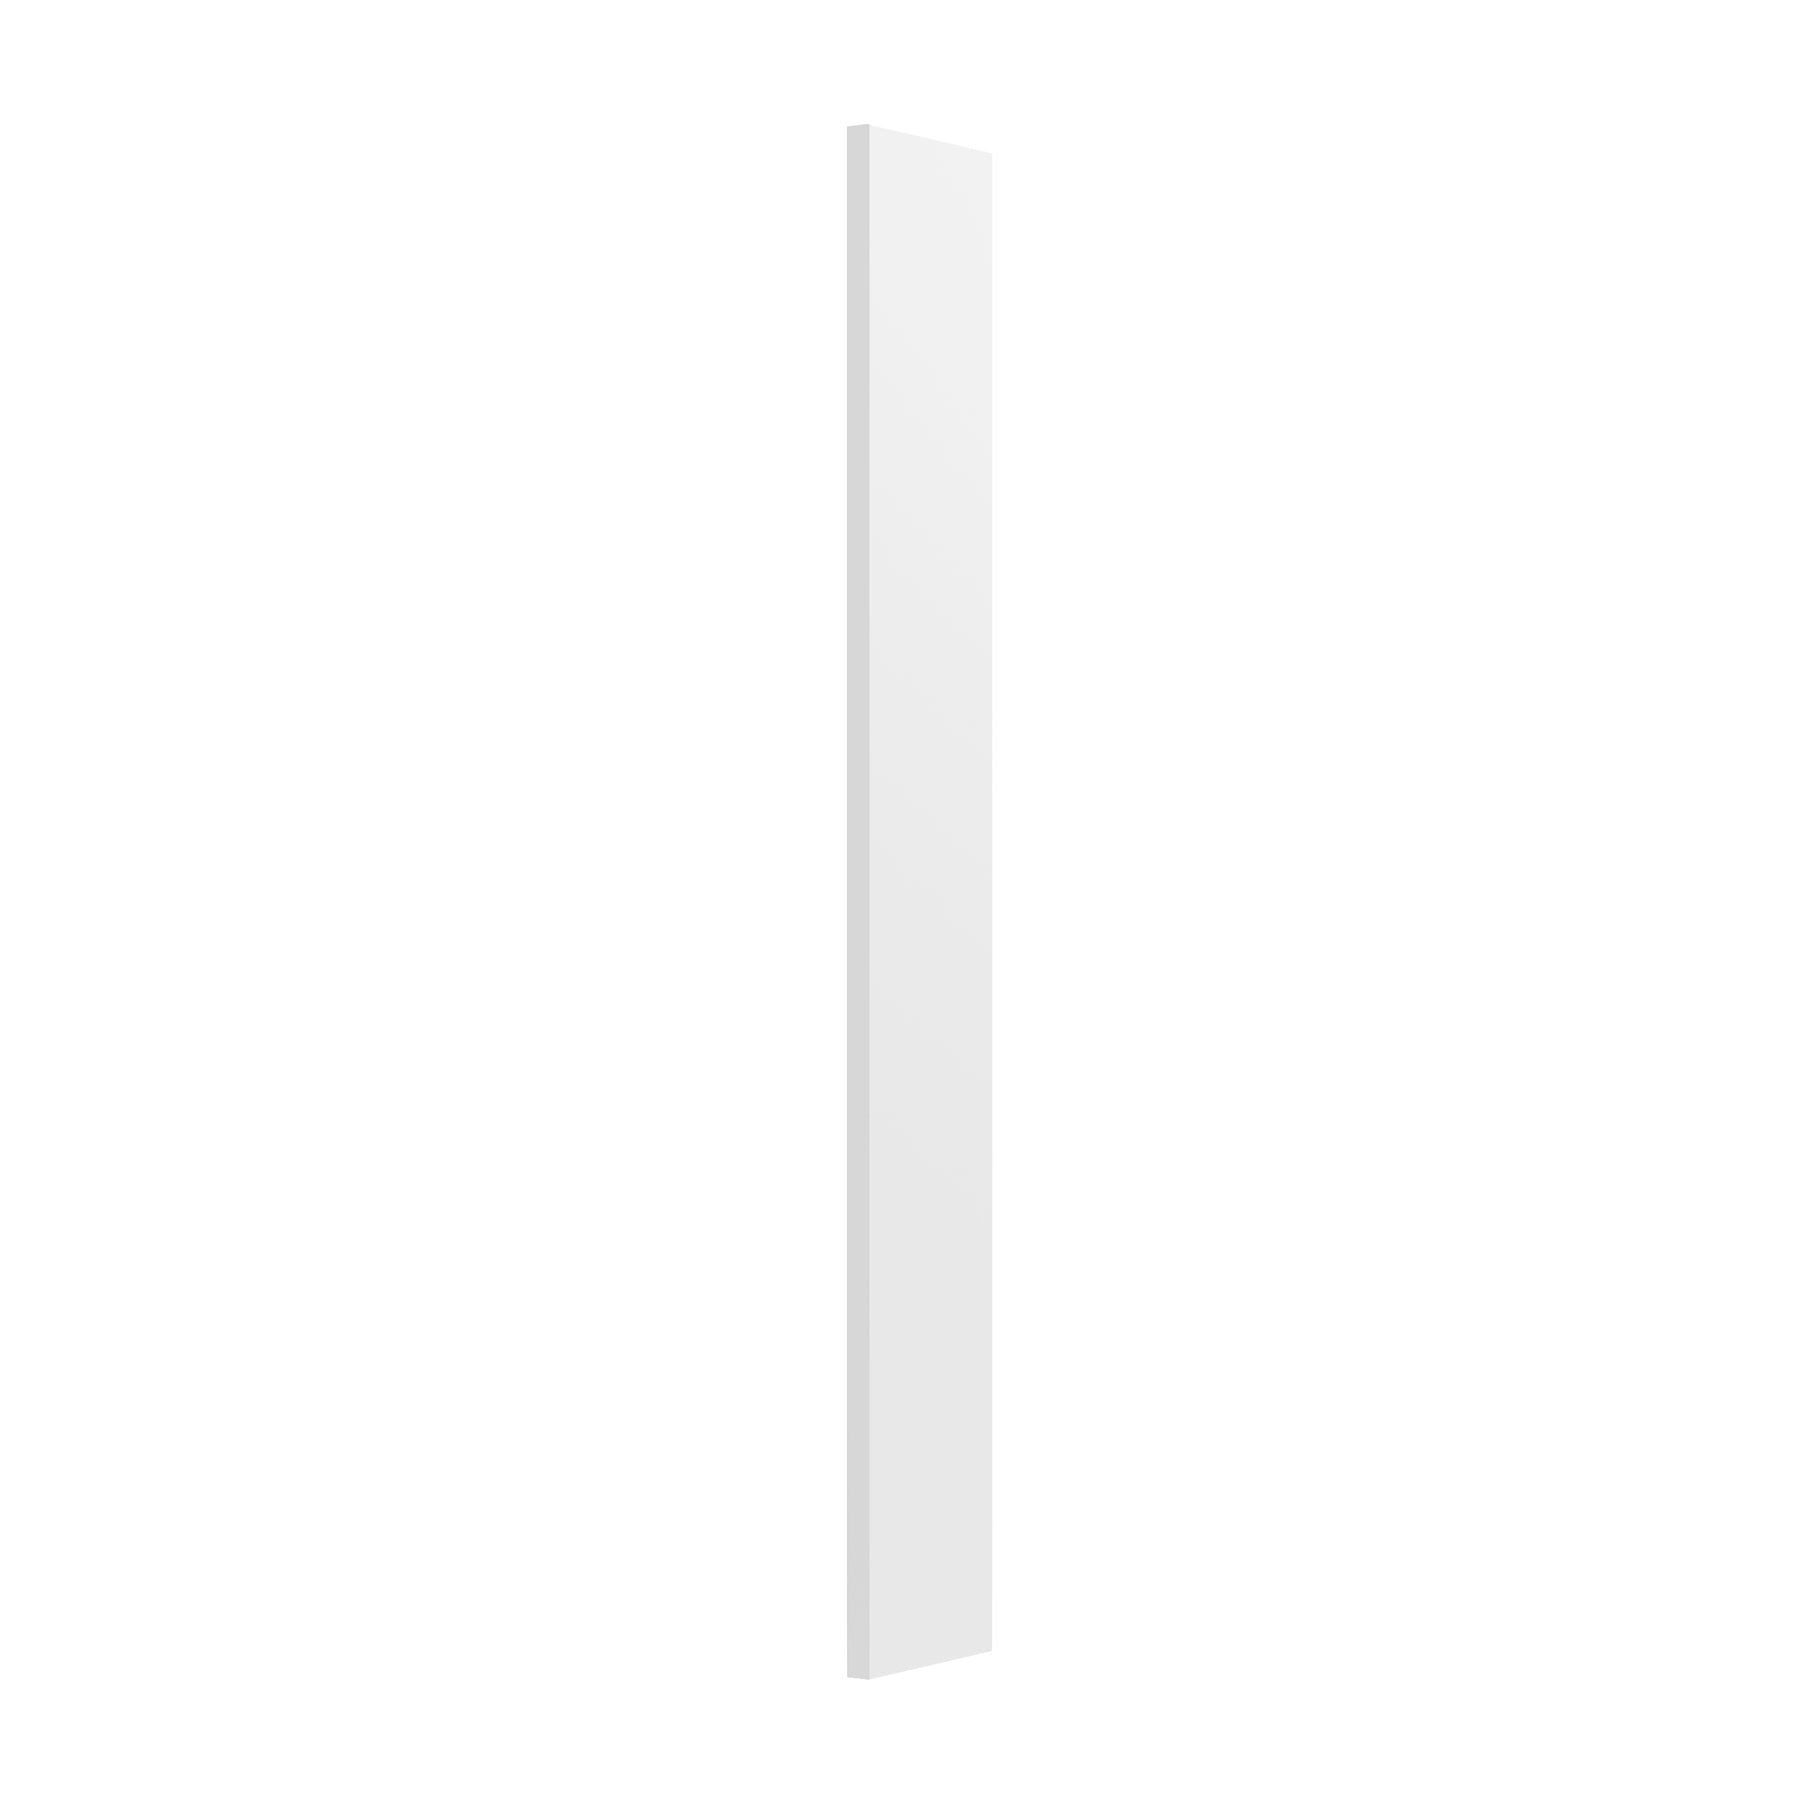 Fashion White - Wall Filler | 6"W x 30"H x 0.75"D